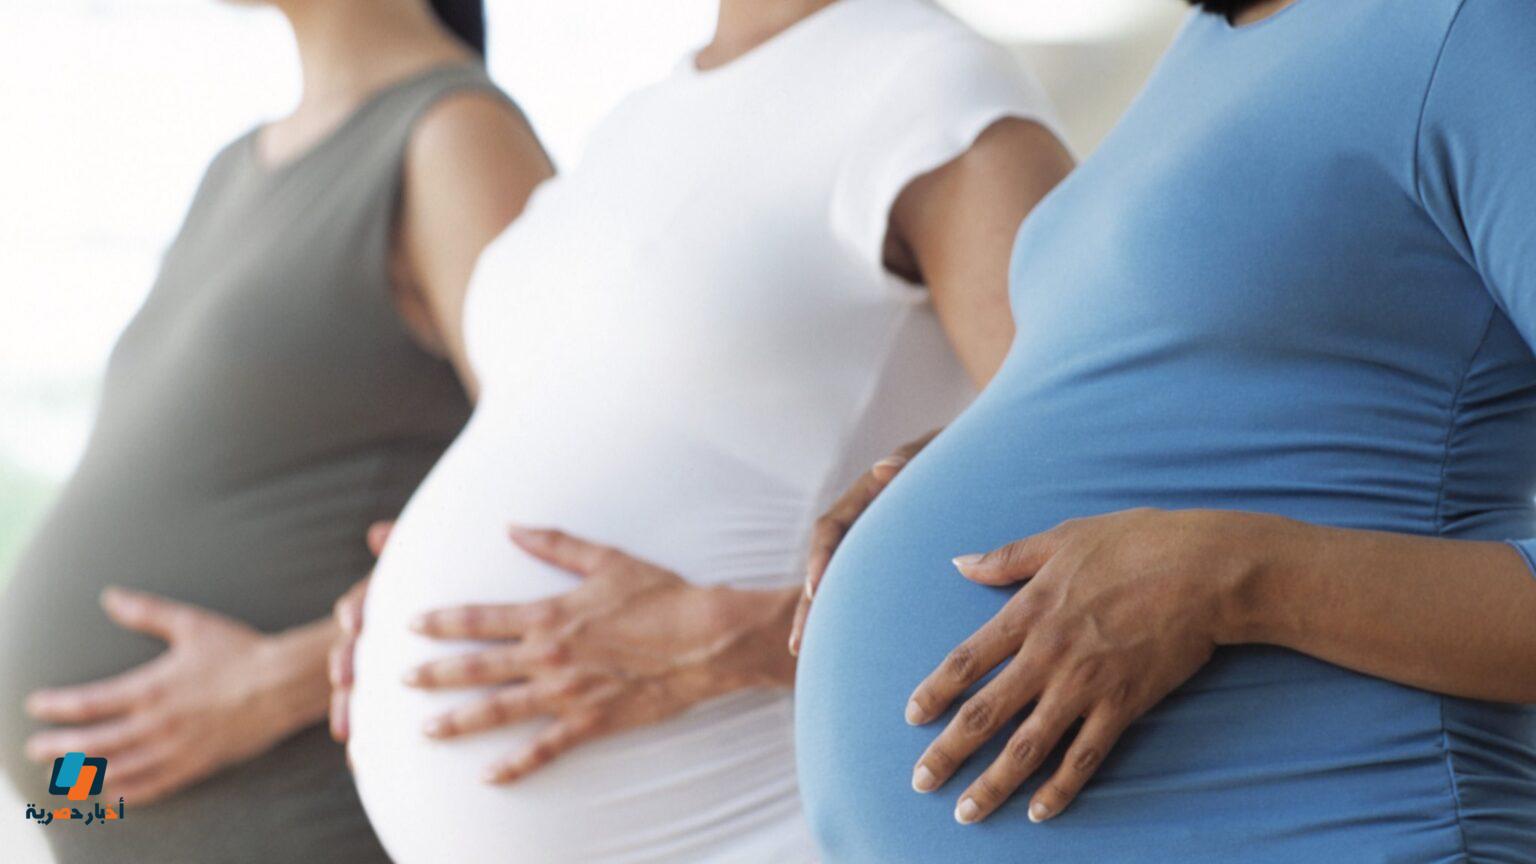 مخاطر الشهر السادس من الحمل المؤكدة من مغص والم الظهر والبطن والتطورات الجنينية